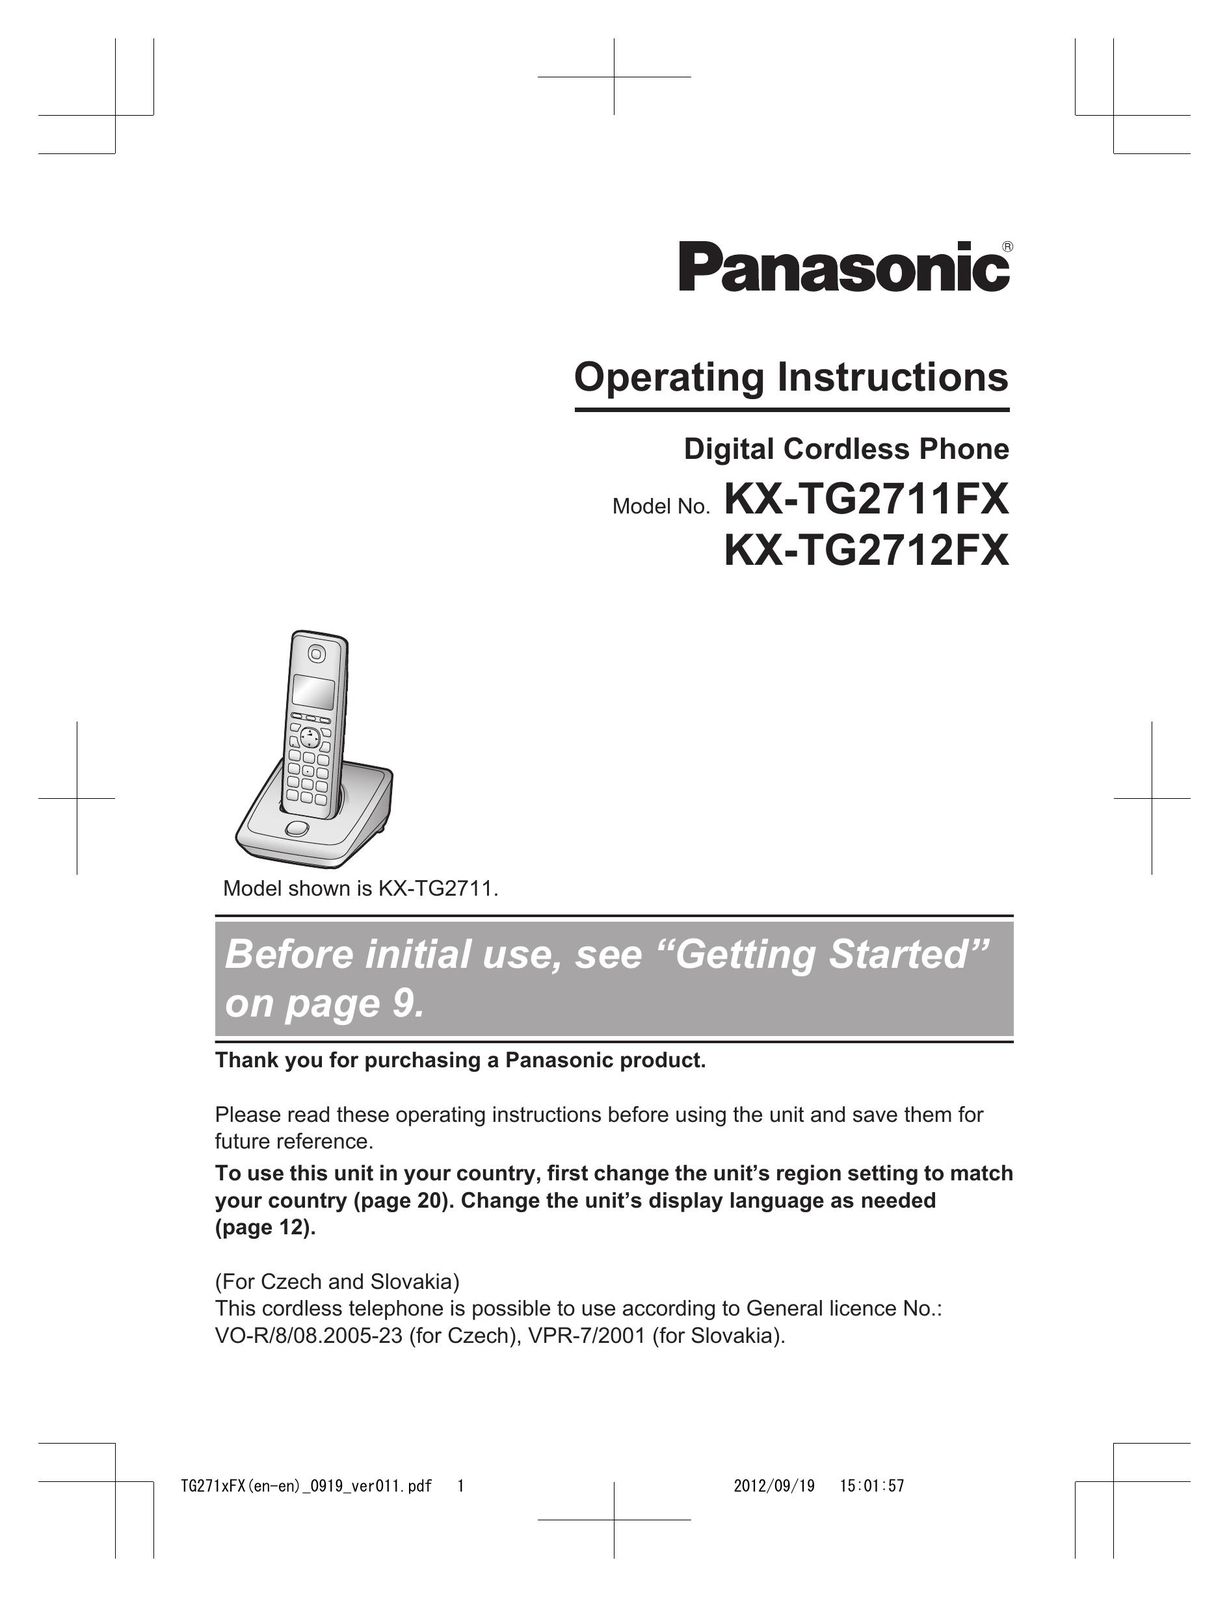 Panasonic KX-TG2712FX Cordless Telephone User Manual